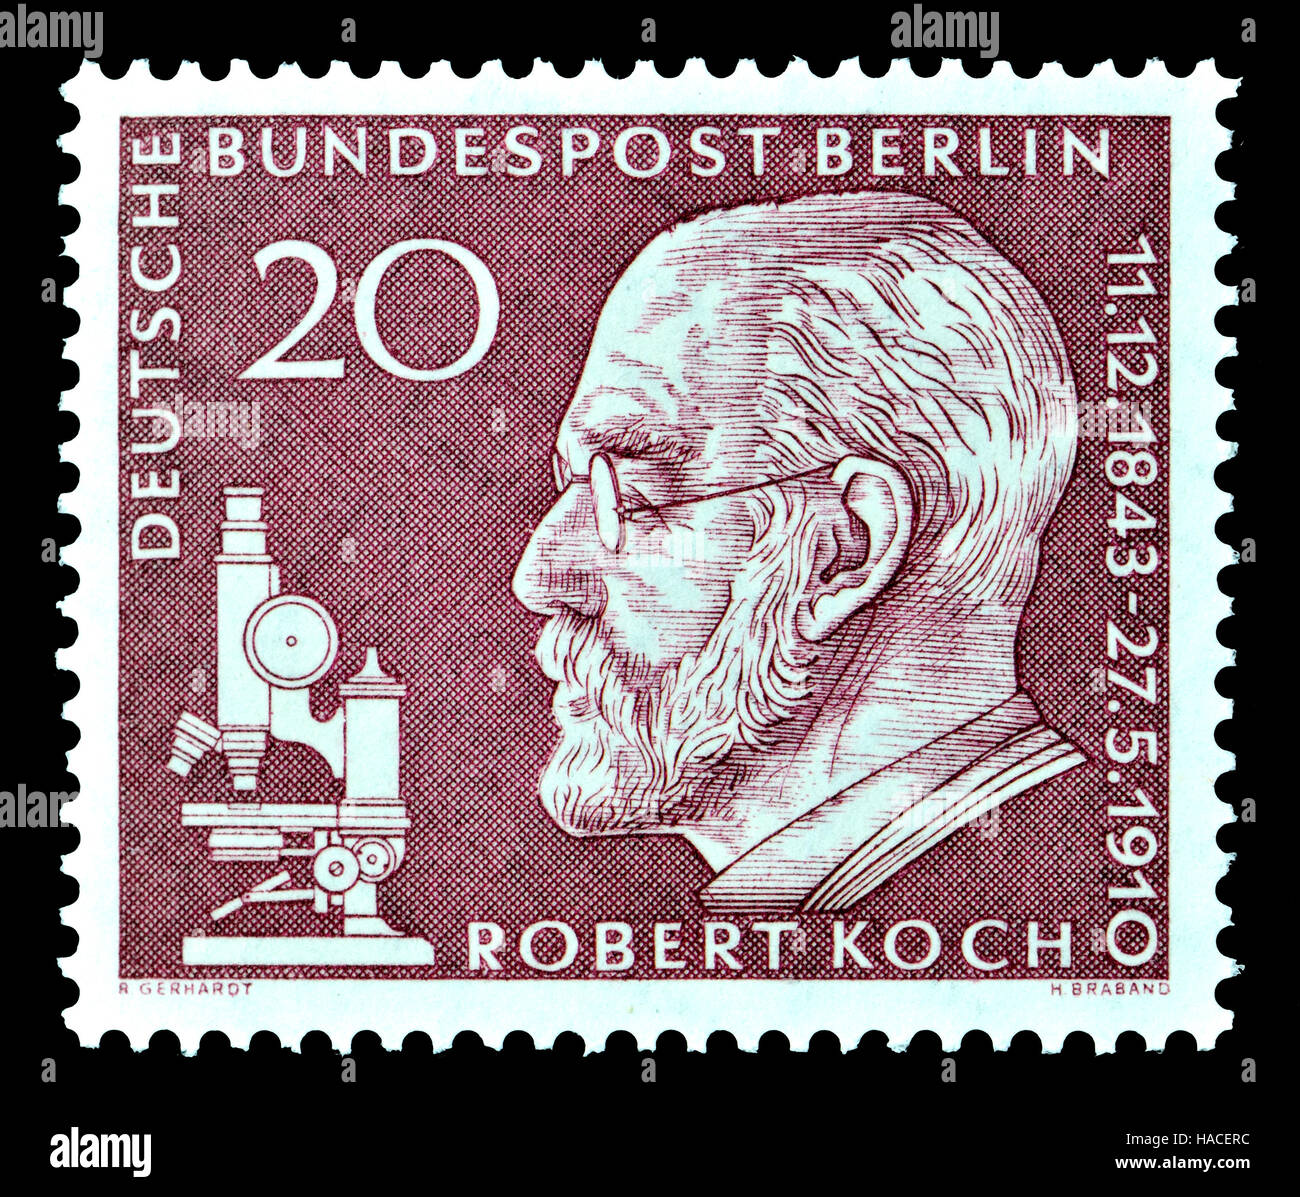 L'allemand (Berlin) timbre-poste (1960) : Robert Heinrich Hermann Koch (1843-1910), médecin et microbiologiste allemand. Fondateur de la bactériologie moderne Banque D'Images